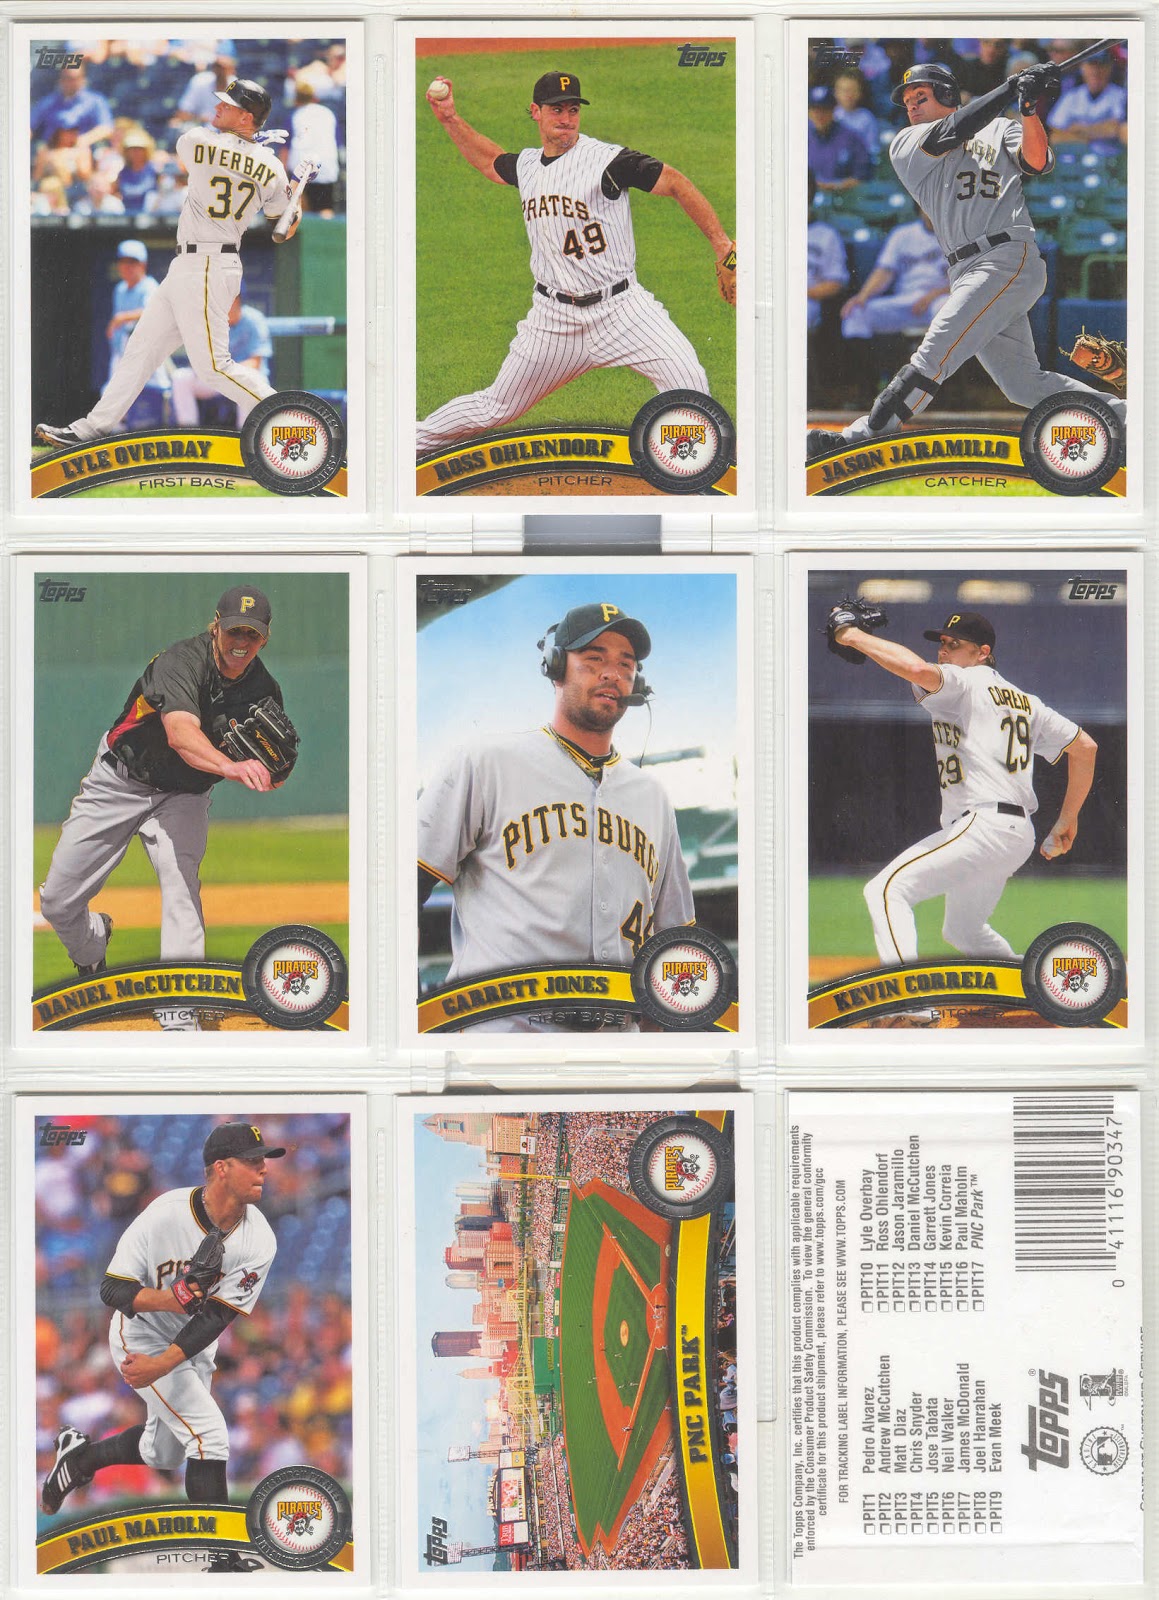 bdj610's Topps Baseball Card Blog: Random Topps Team Set of the Week: 2011 Pittsburgh ...